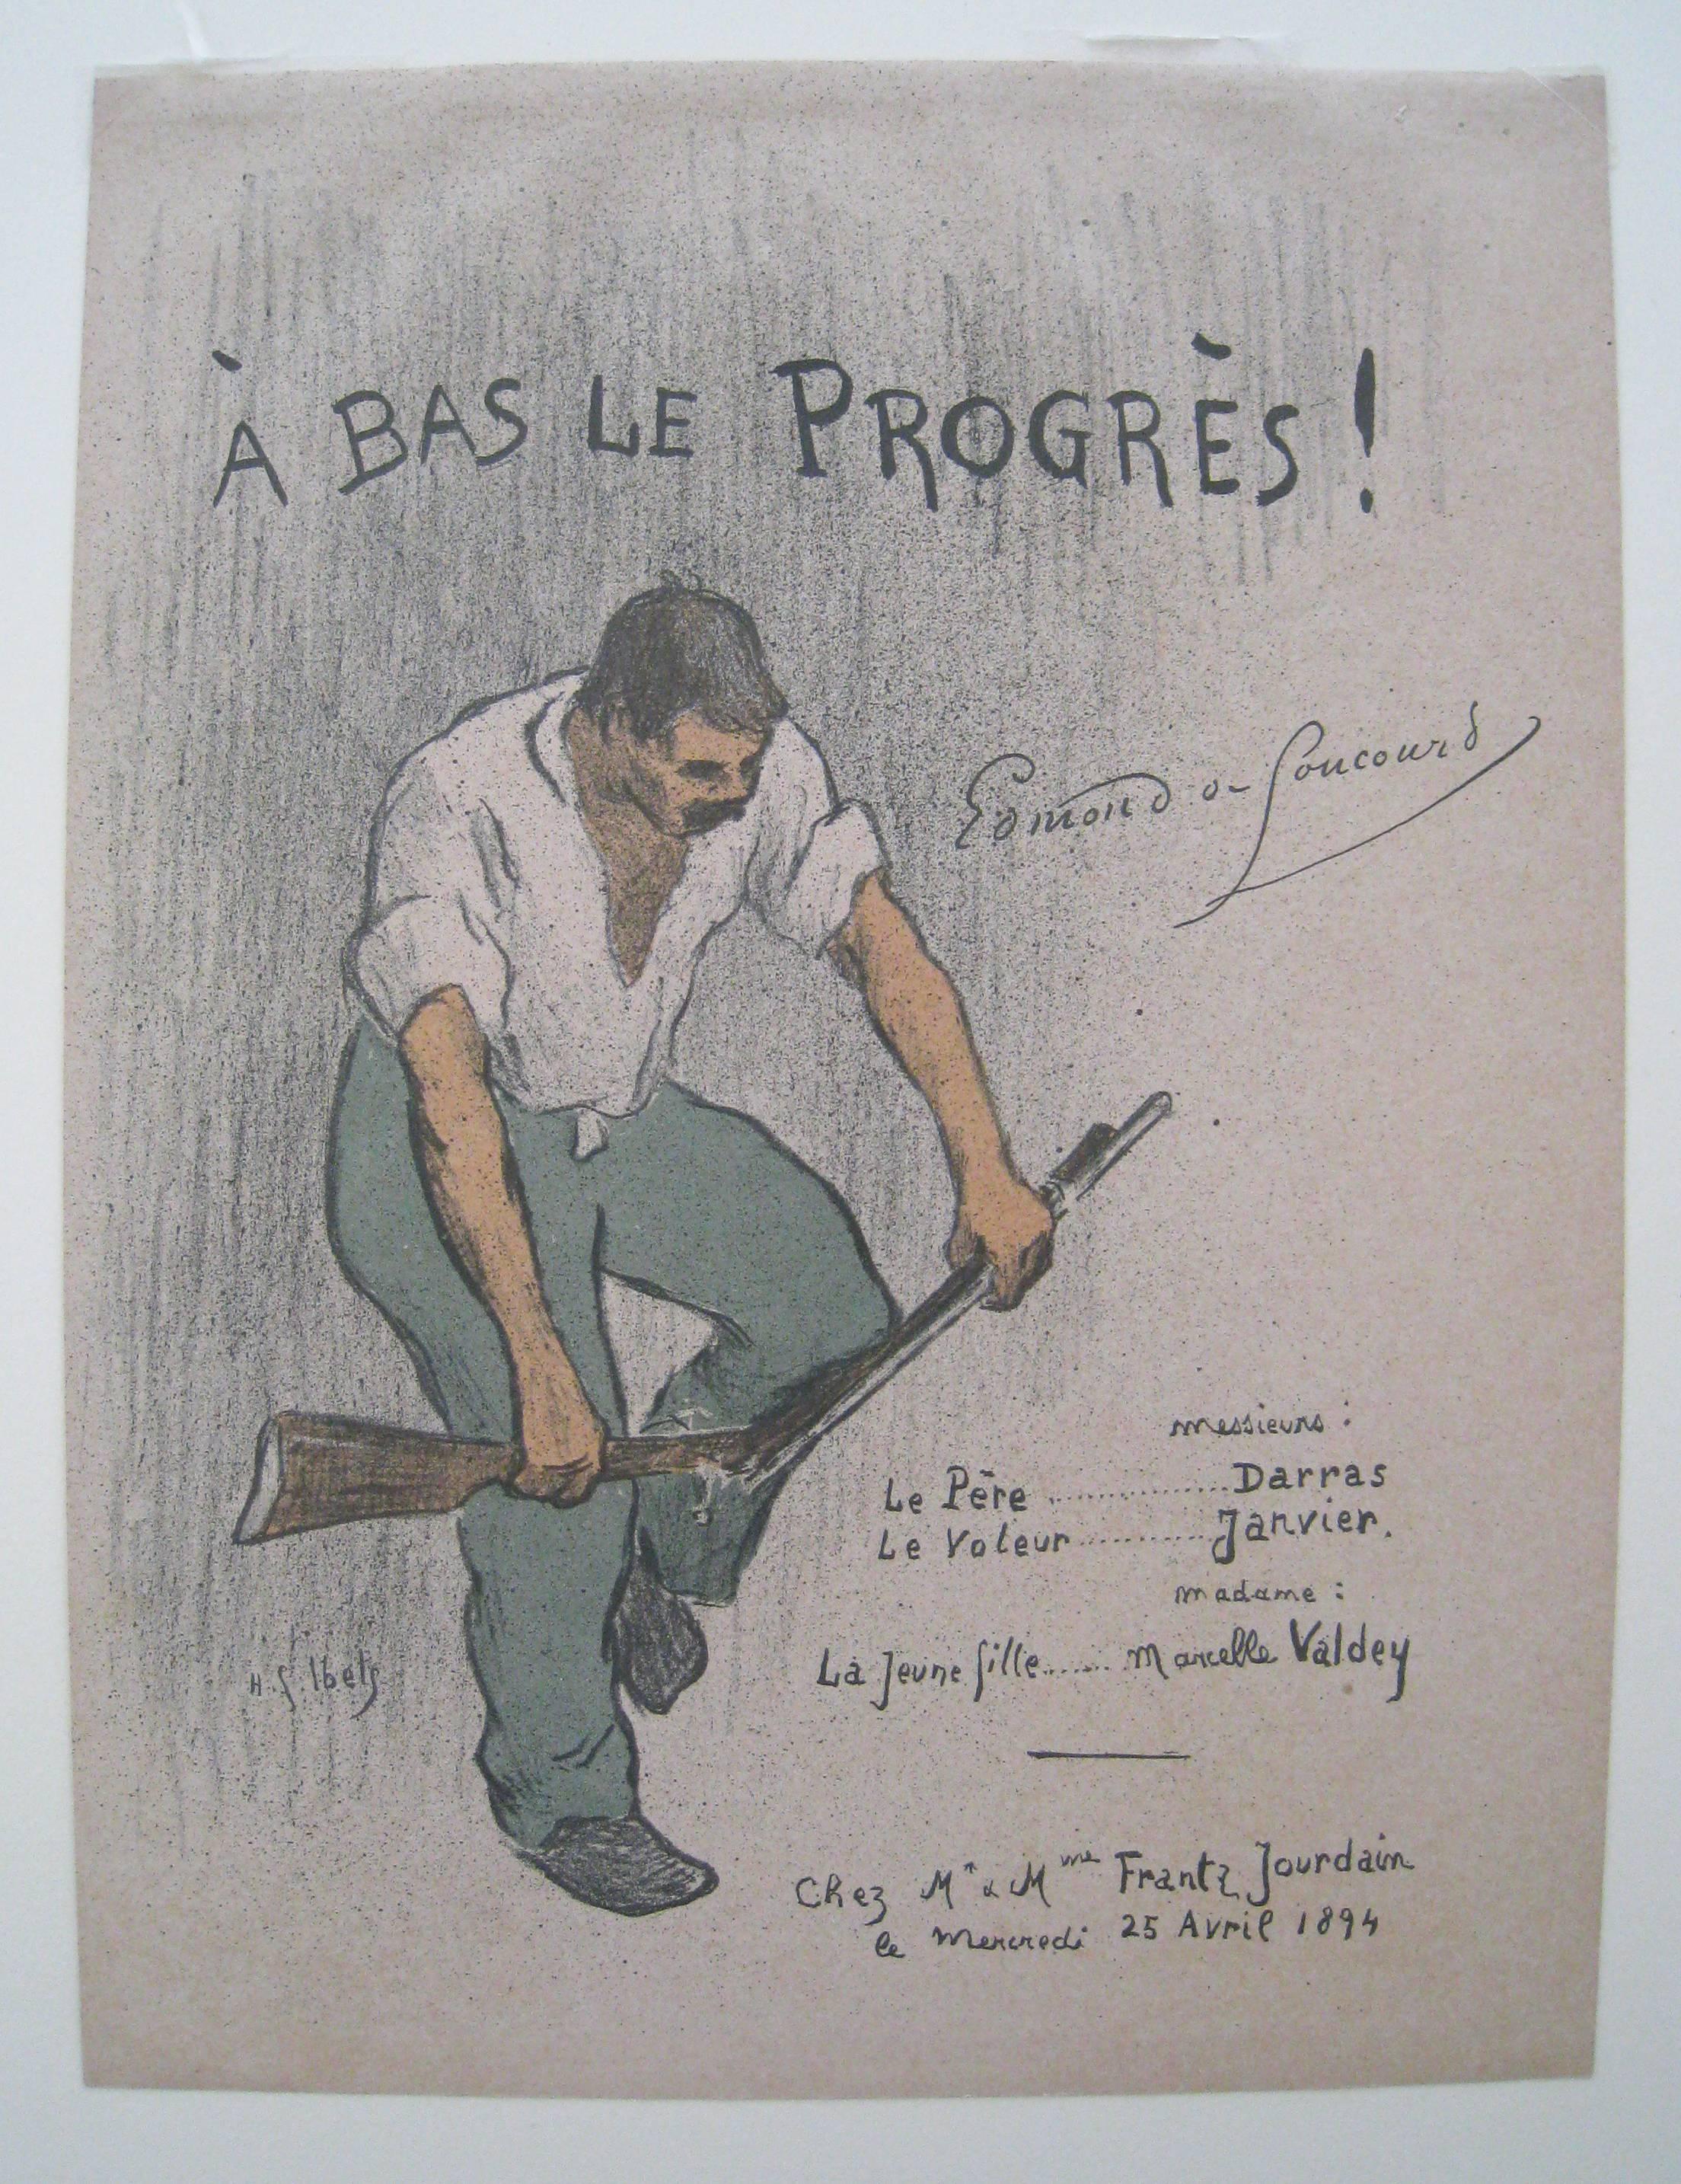 Program for A Bas Le Progres.